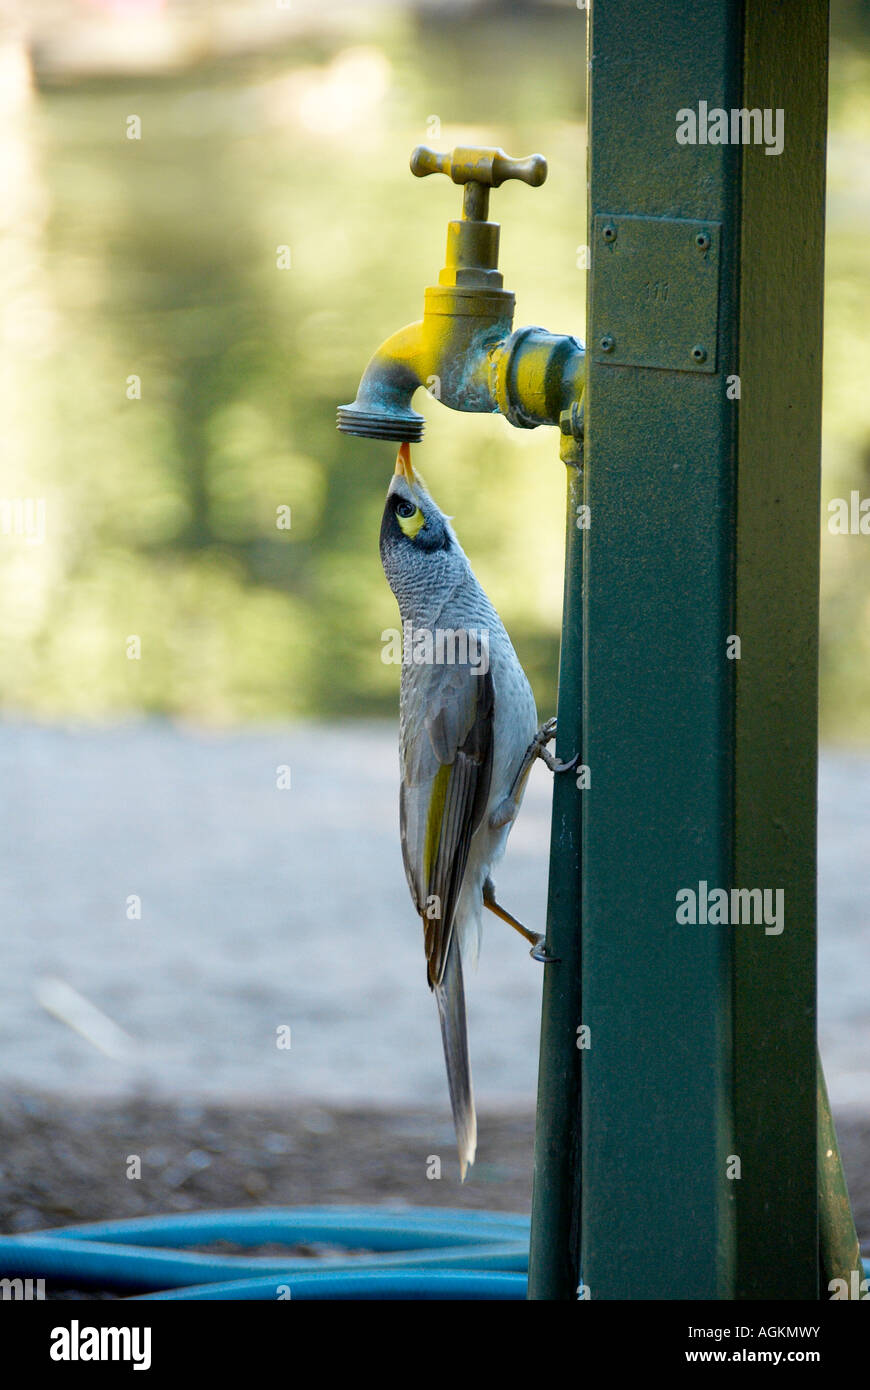 Laut kleine Vogel aus undichten Wasserhahn trinken Stockfotografie - Alamy